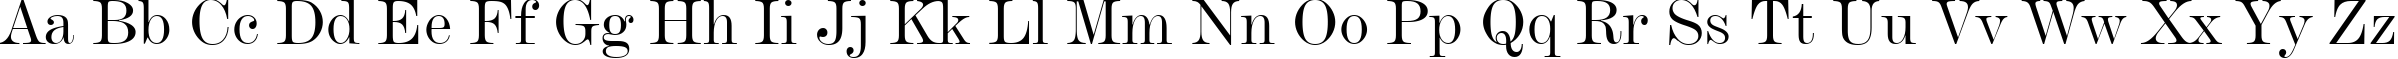 Пример написания английского алфавита шрифтом De Vinne BT